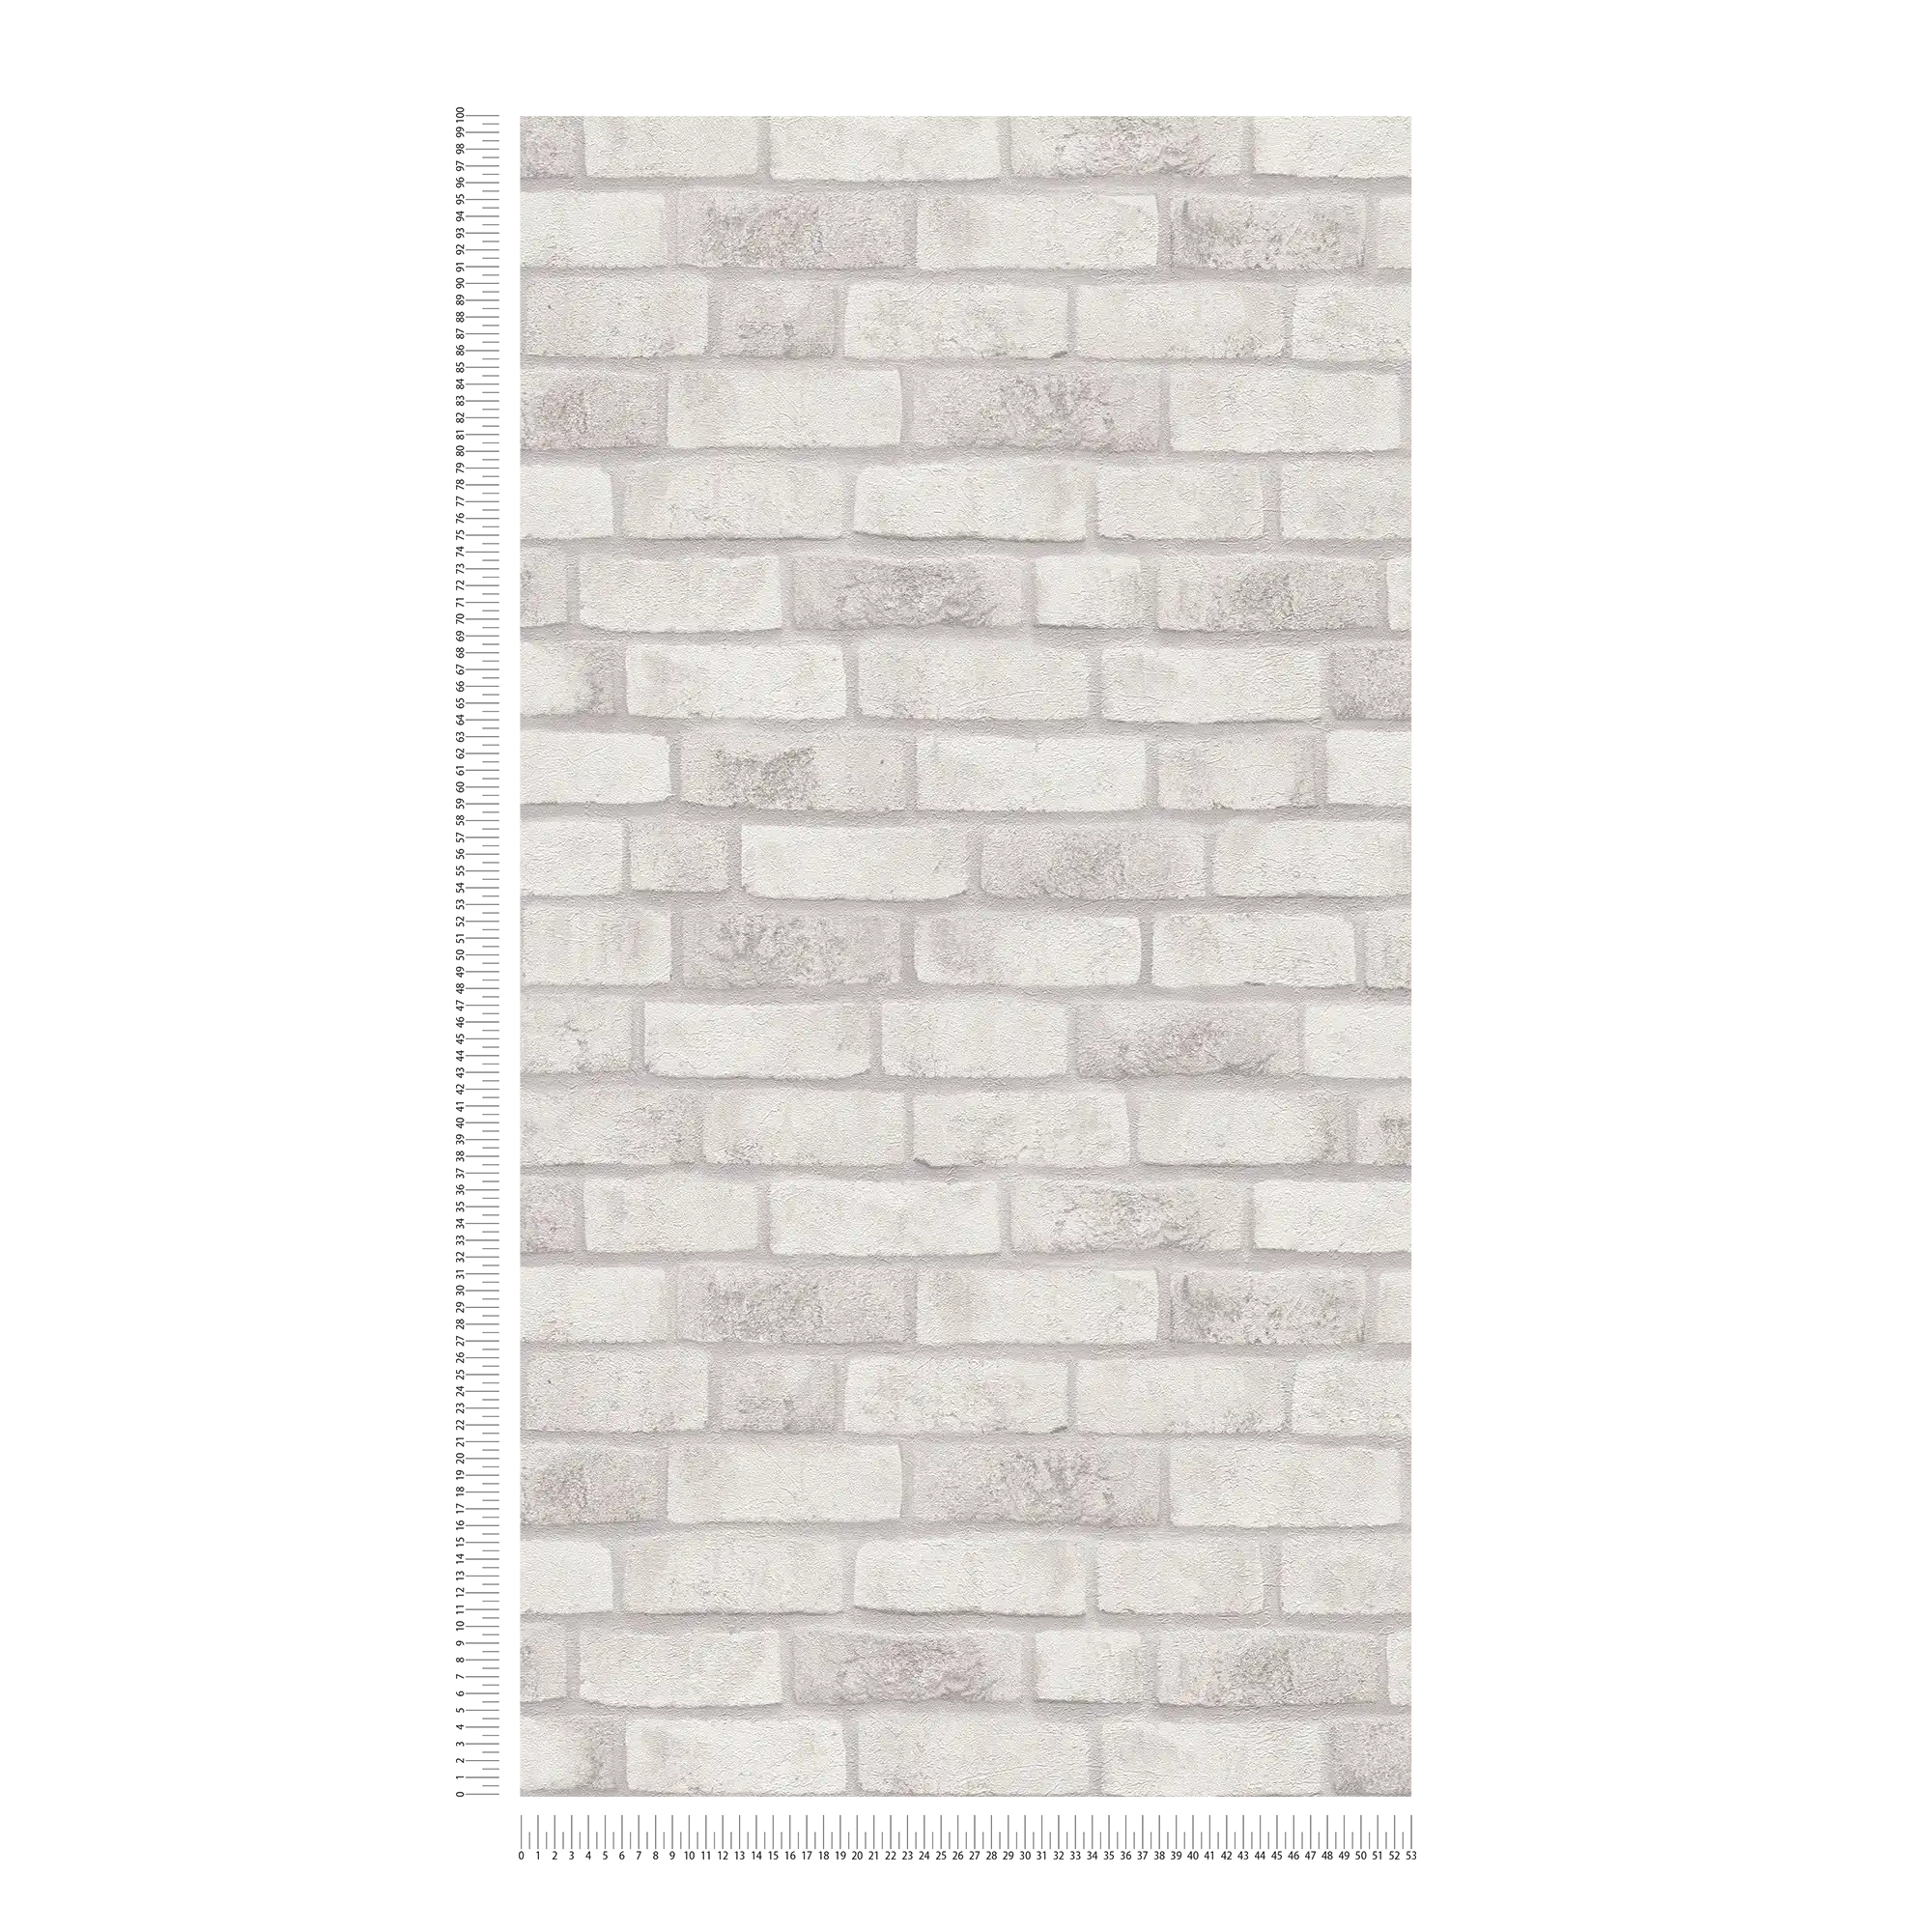             Vliesbehang met bakstenen muur - wit, grijs, grijs
        